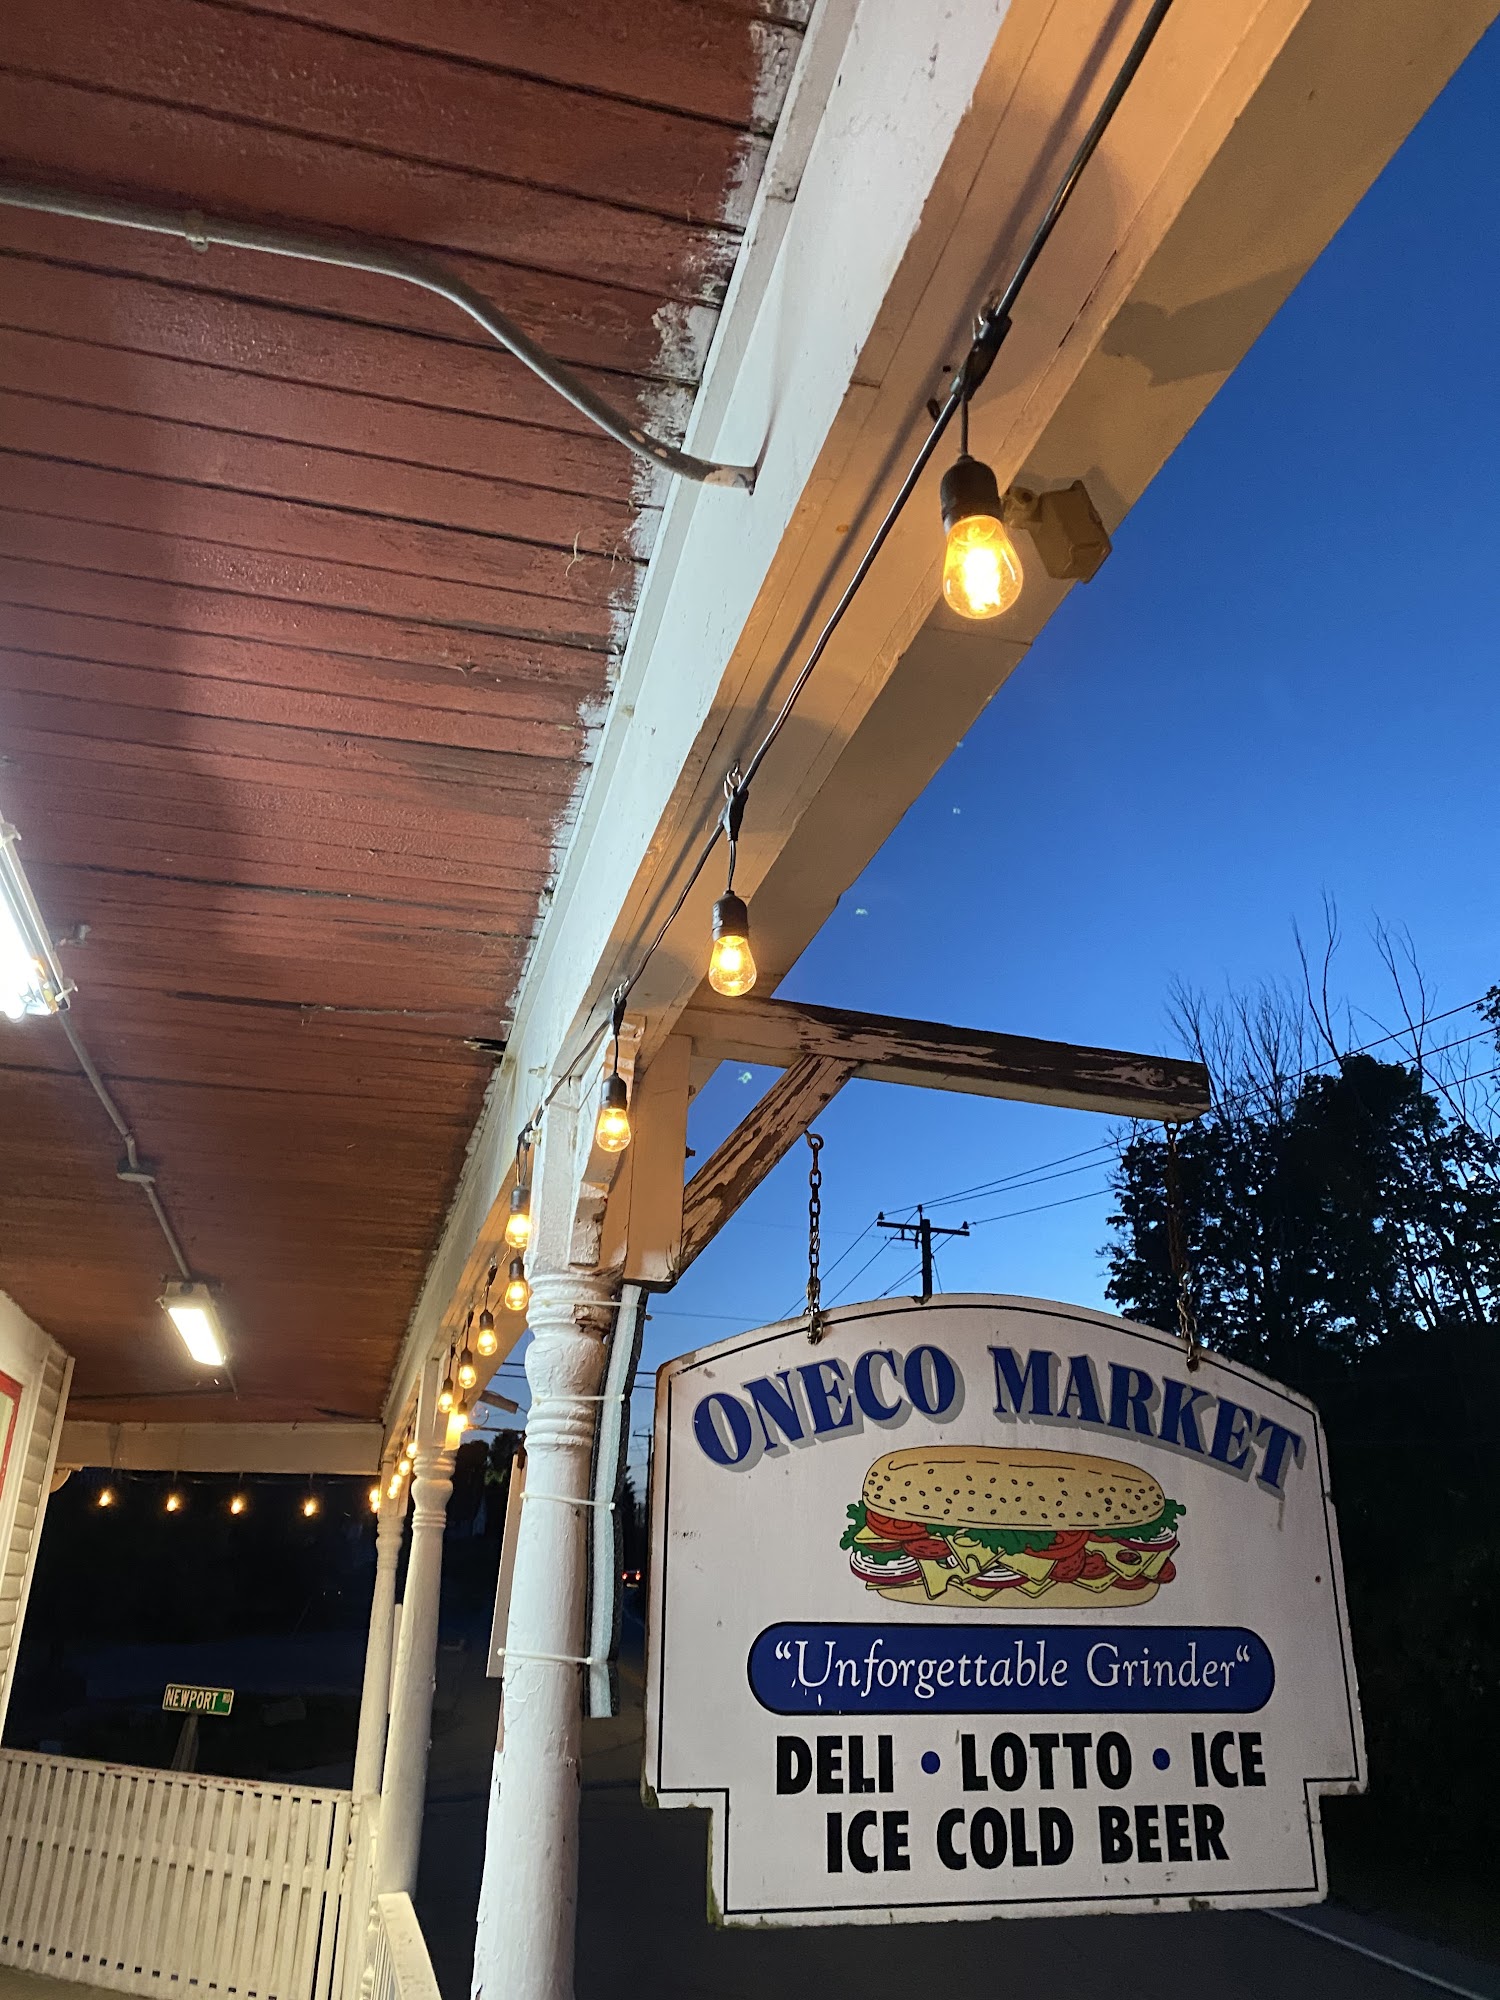 Oneco Market